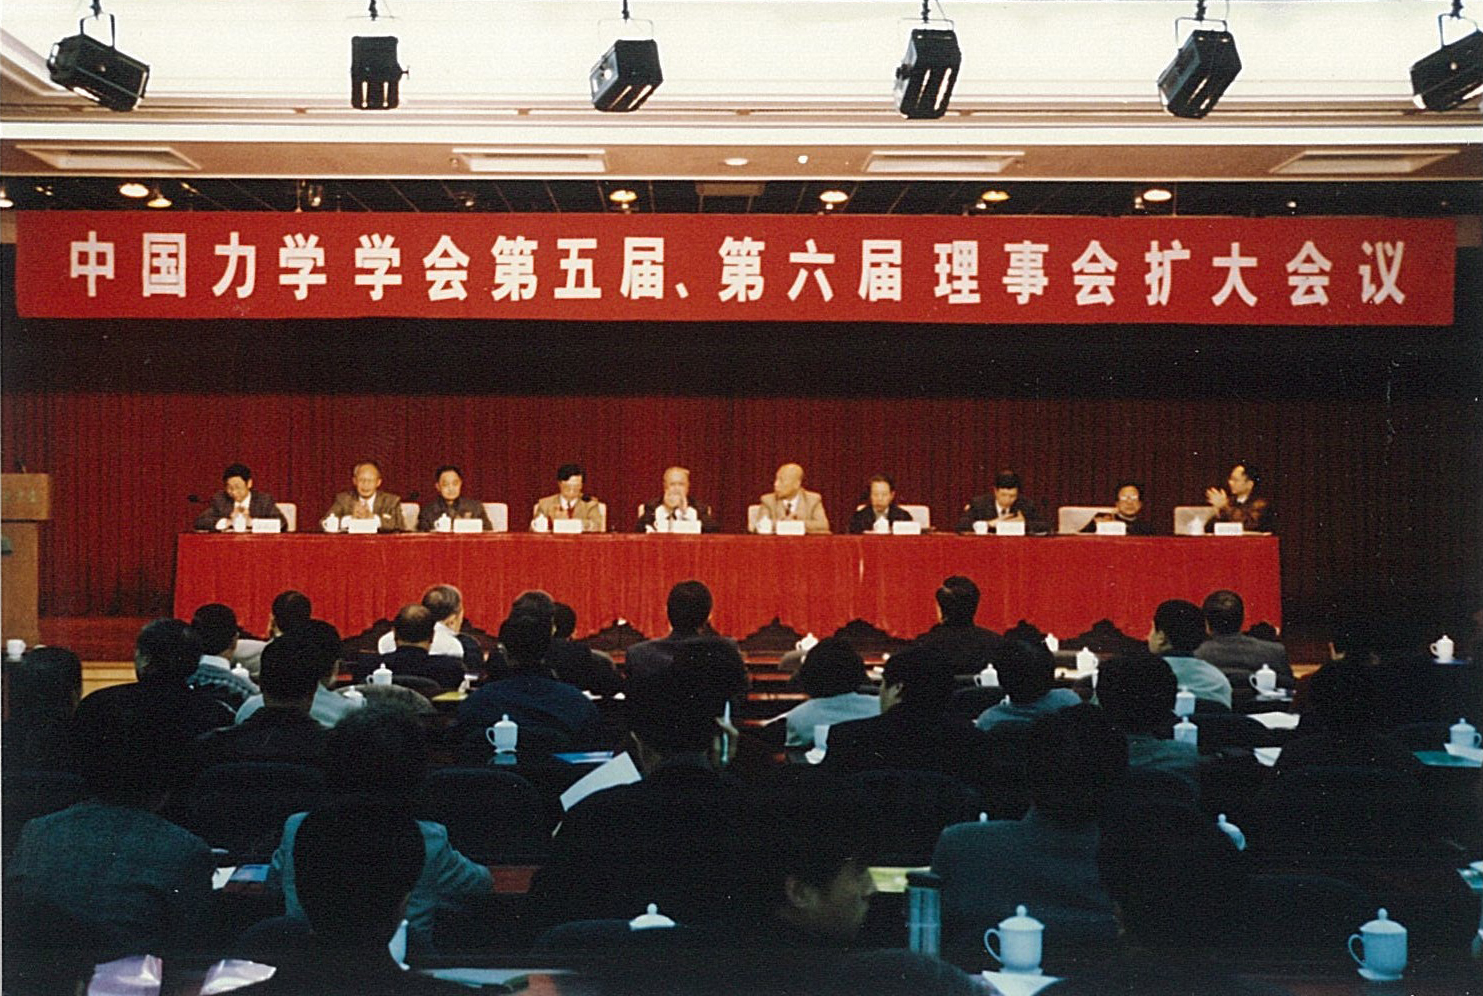 第五届、第六届理事会扩大会议在北京铁道大厦召开（1998年11月28日-30日），白以龙出席会议。